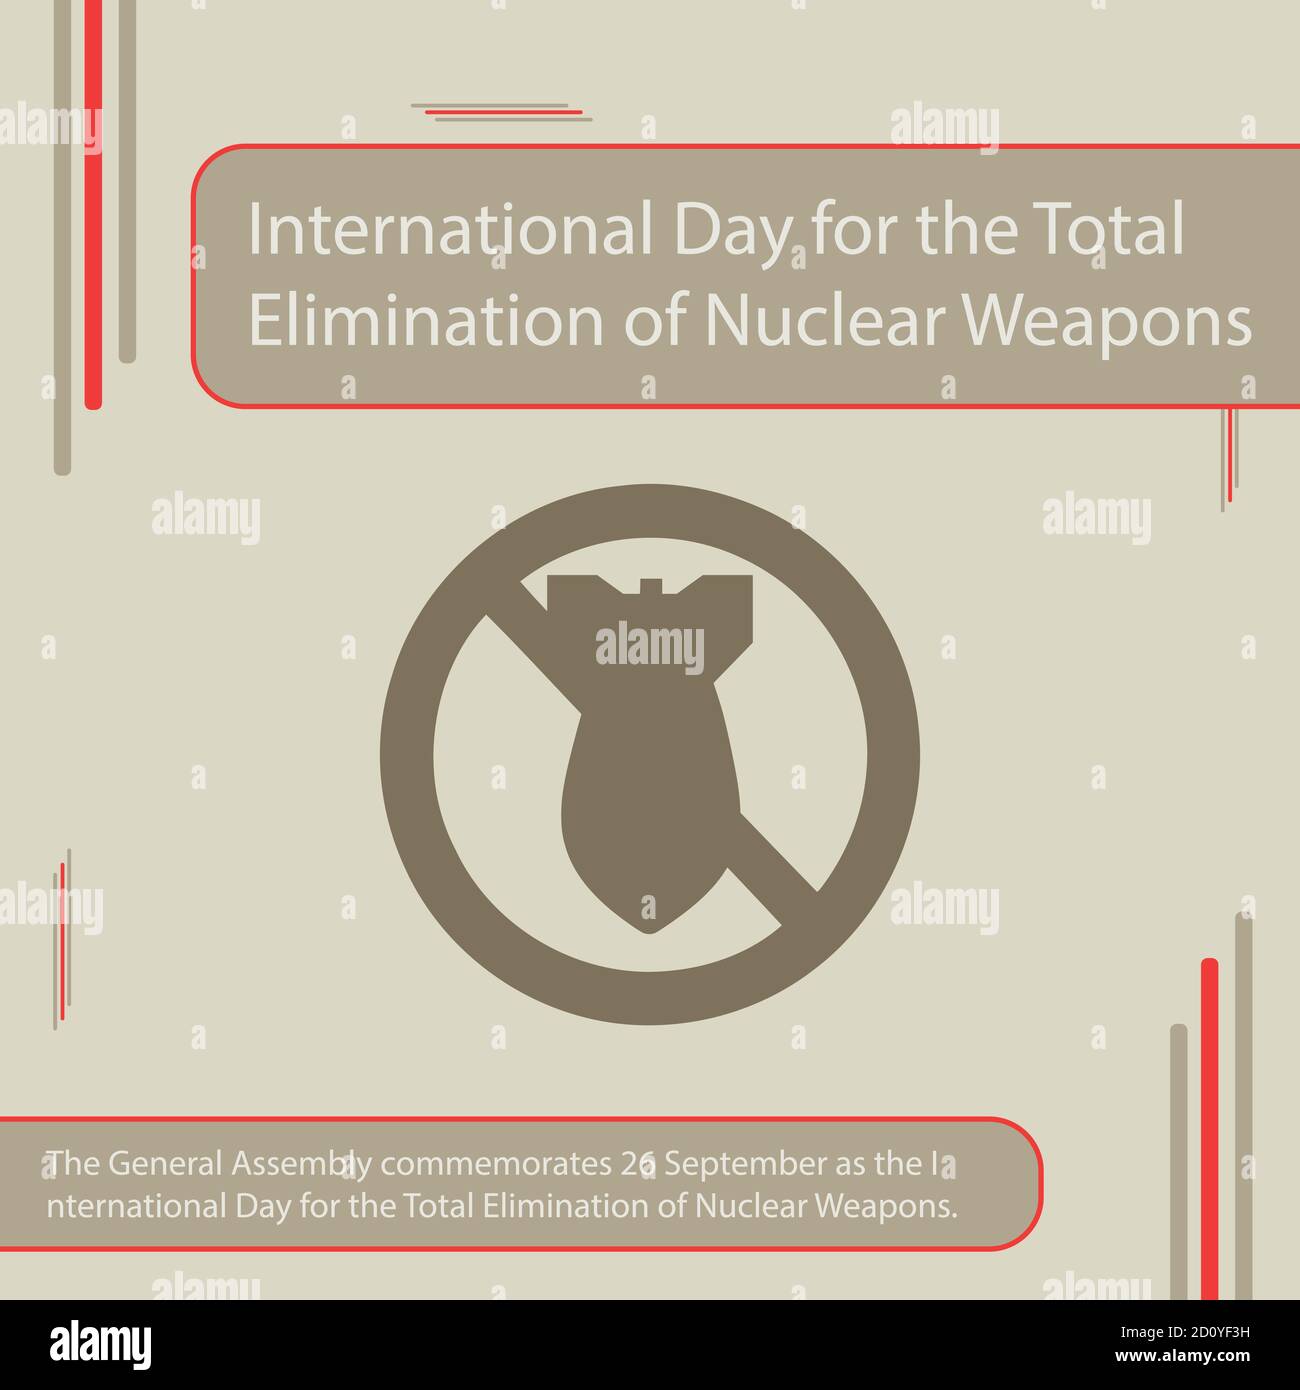 Die Generalversammlung erinnert an den 26. September als den Internationalen Tag für die vollständige Beseitigung von Atomwaffen. Stock Vektor